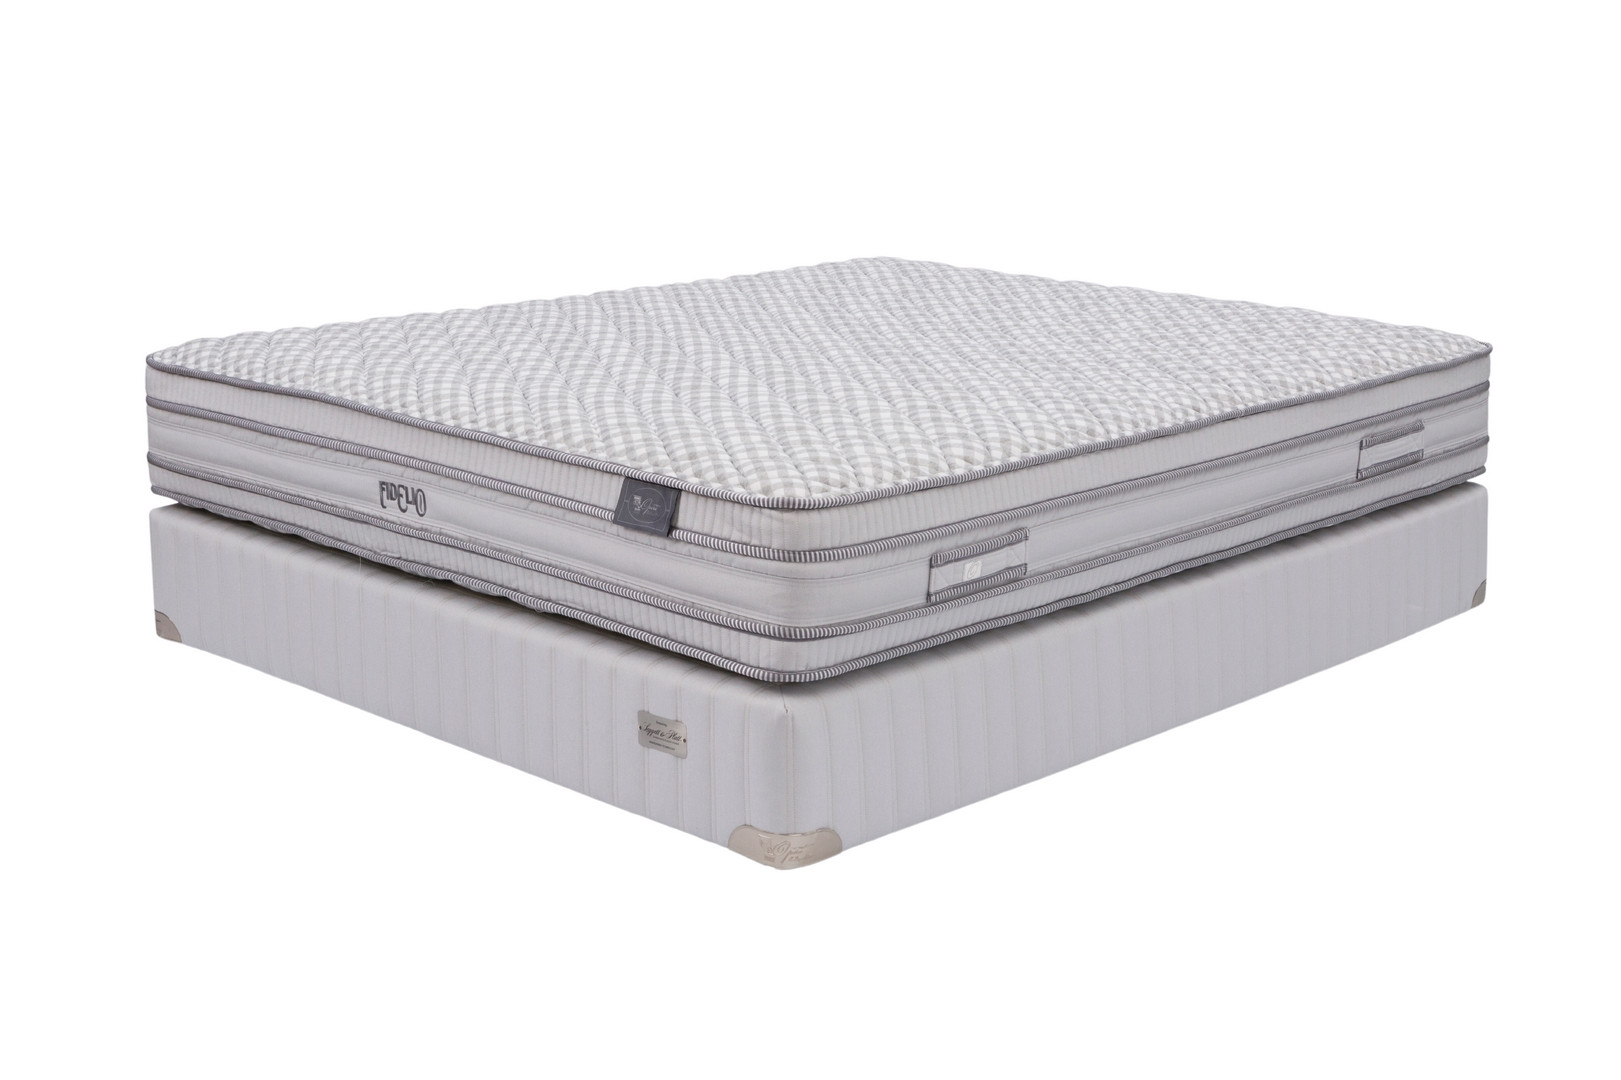 Opera orthopedic mattress Fidelio 150x190 medium, 26.25cm